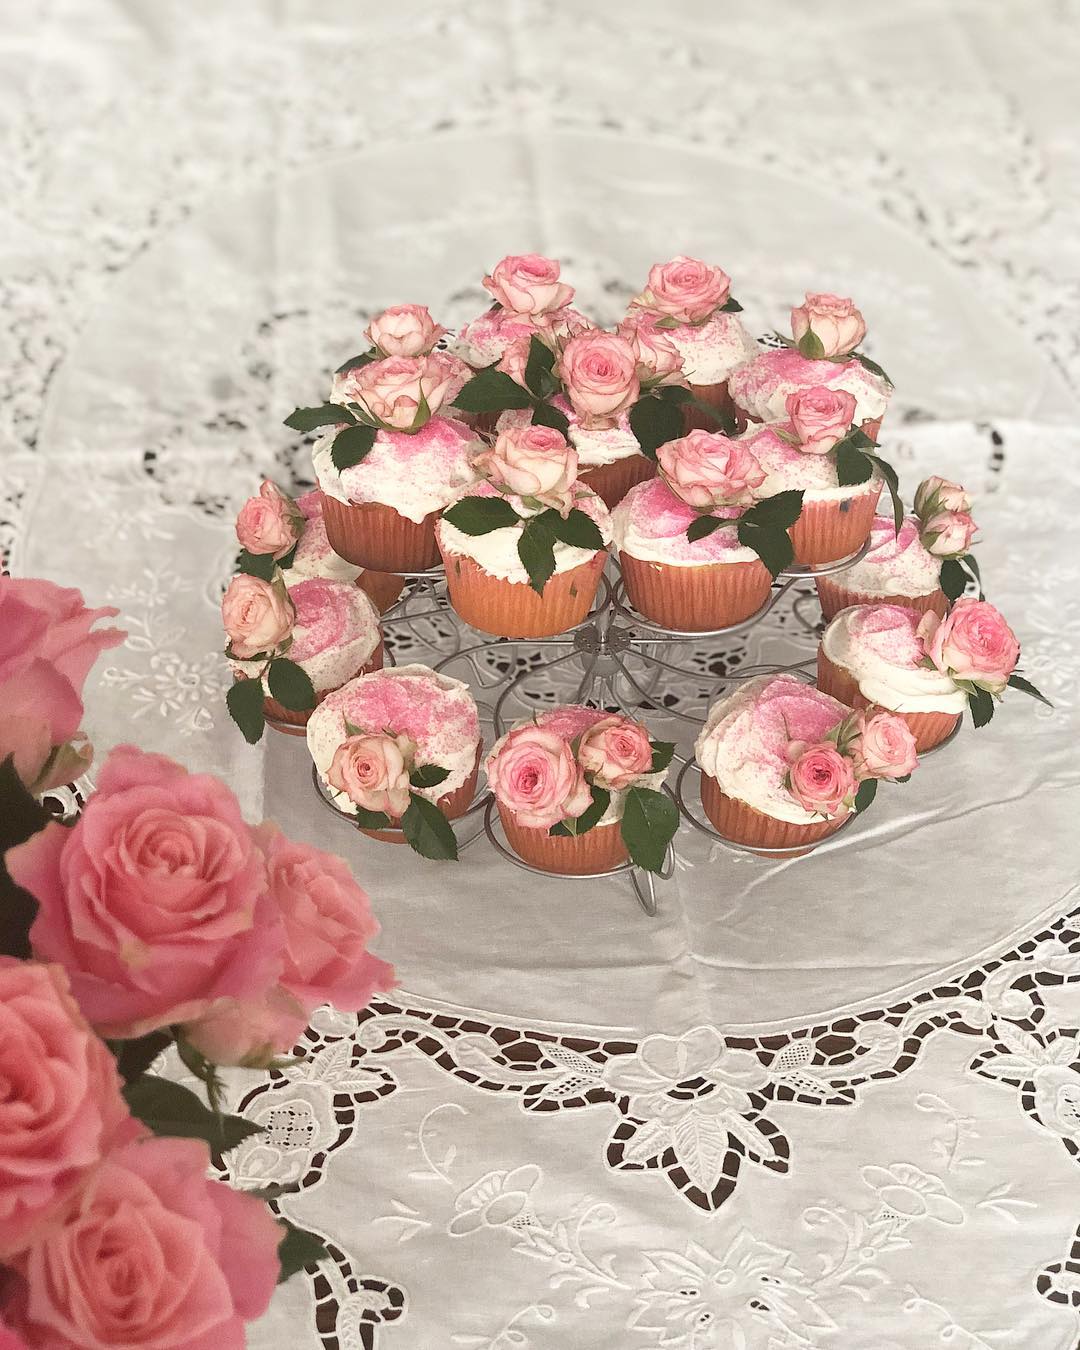 桐島かれん 今日は 三女の19歳の誕生日 早起きして 誕生日カップケーキを作りました バースデーケーキ Birthdaycupcakes Wacoca Japan People Life Style